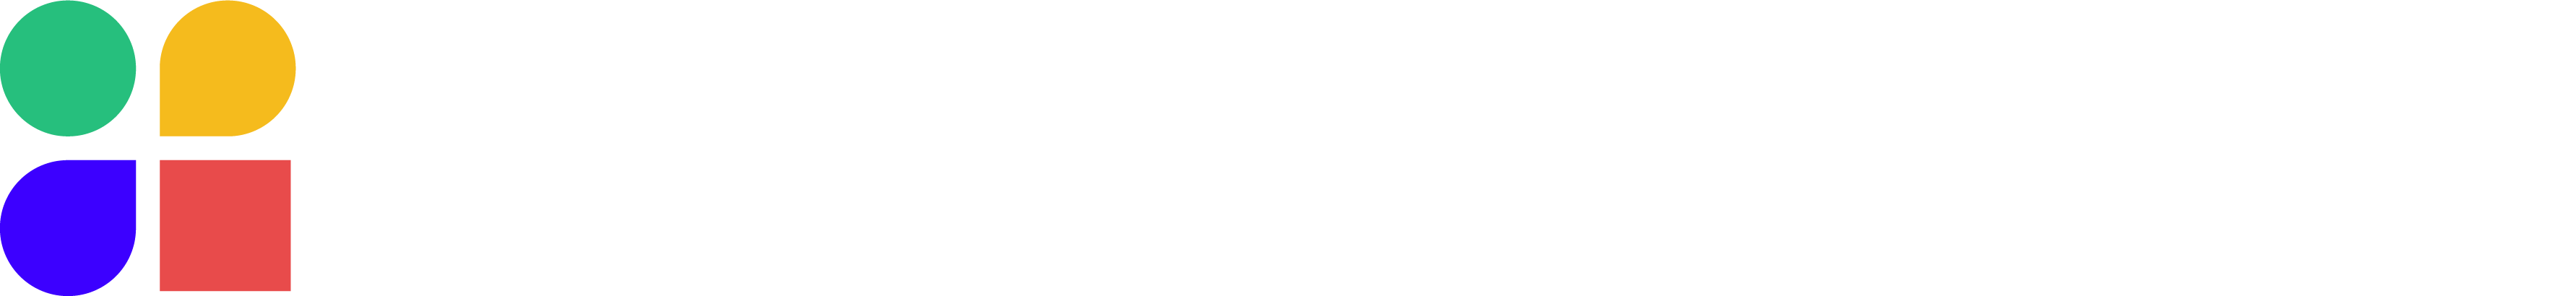 activenav_logo_white-01